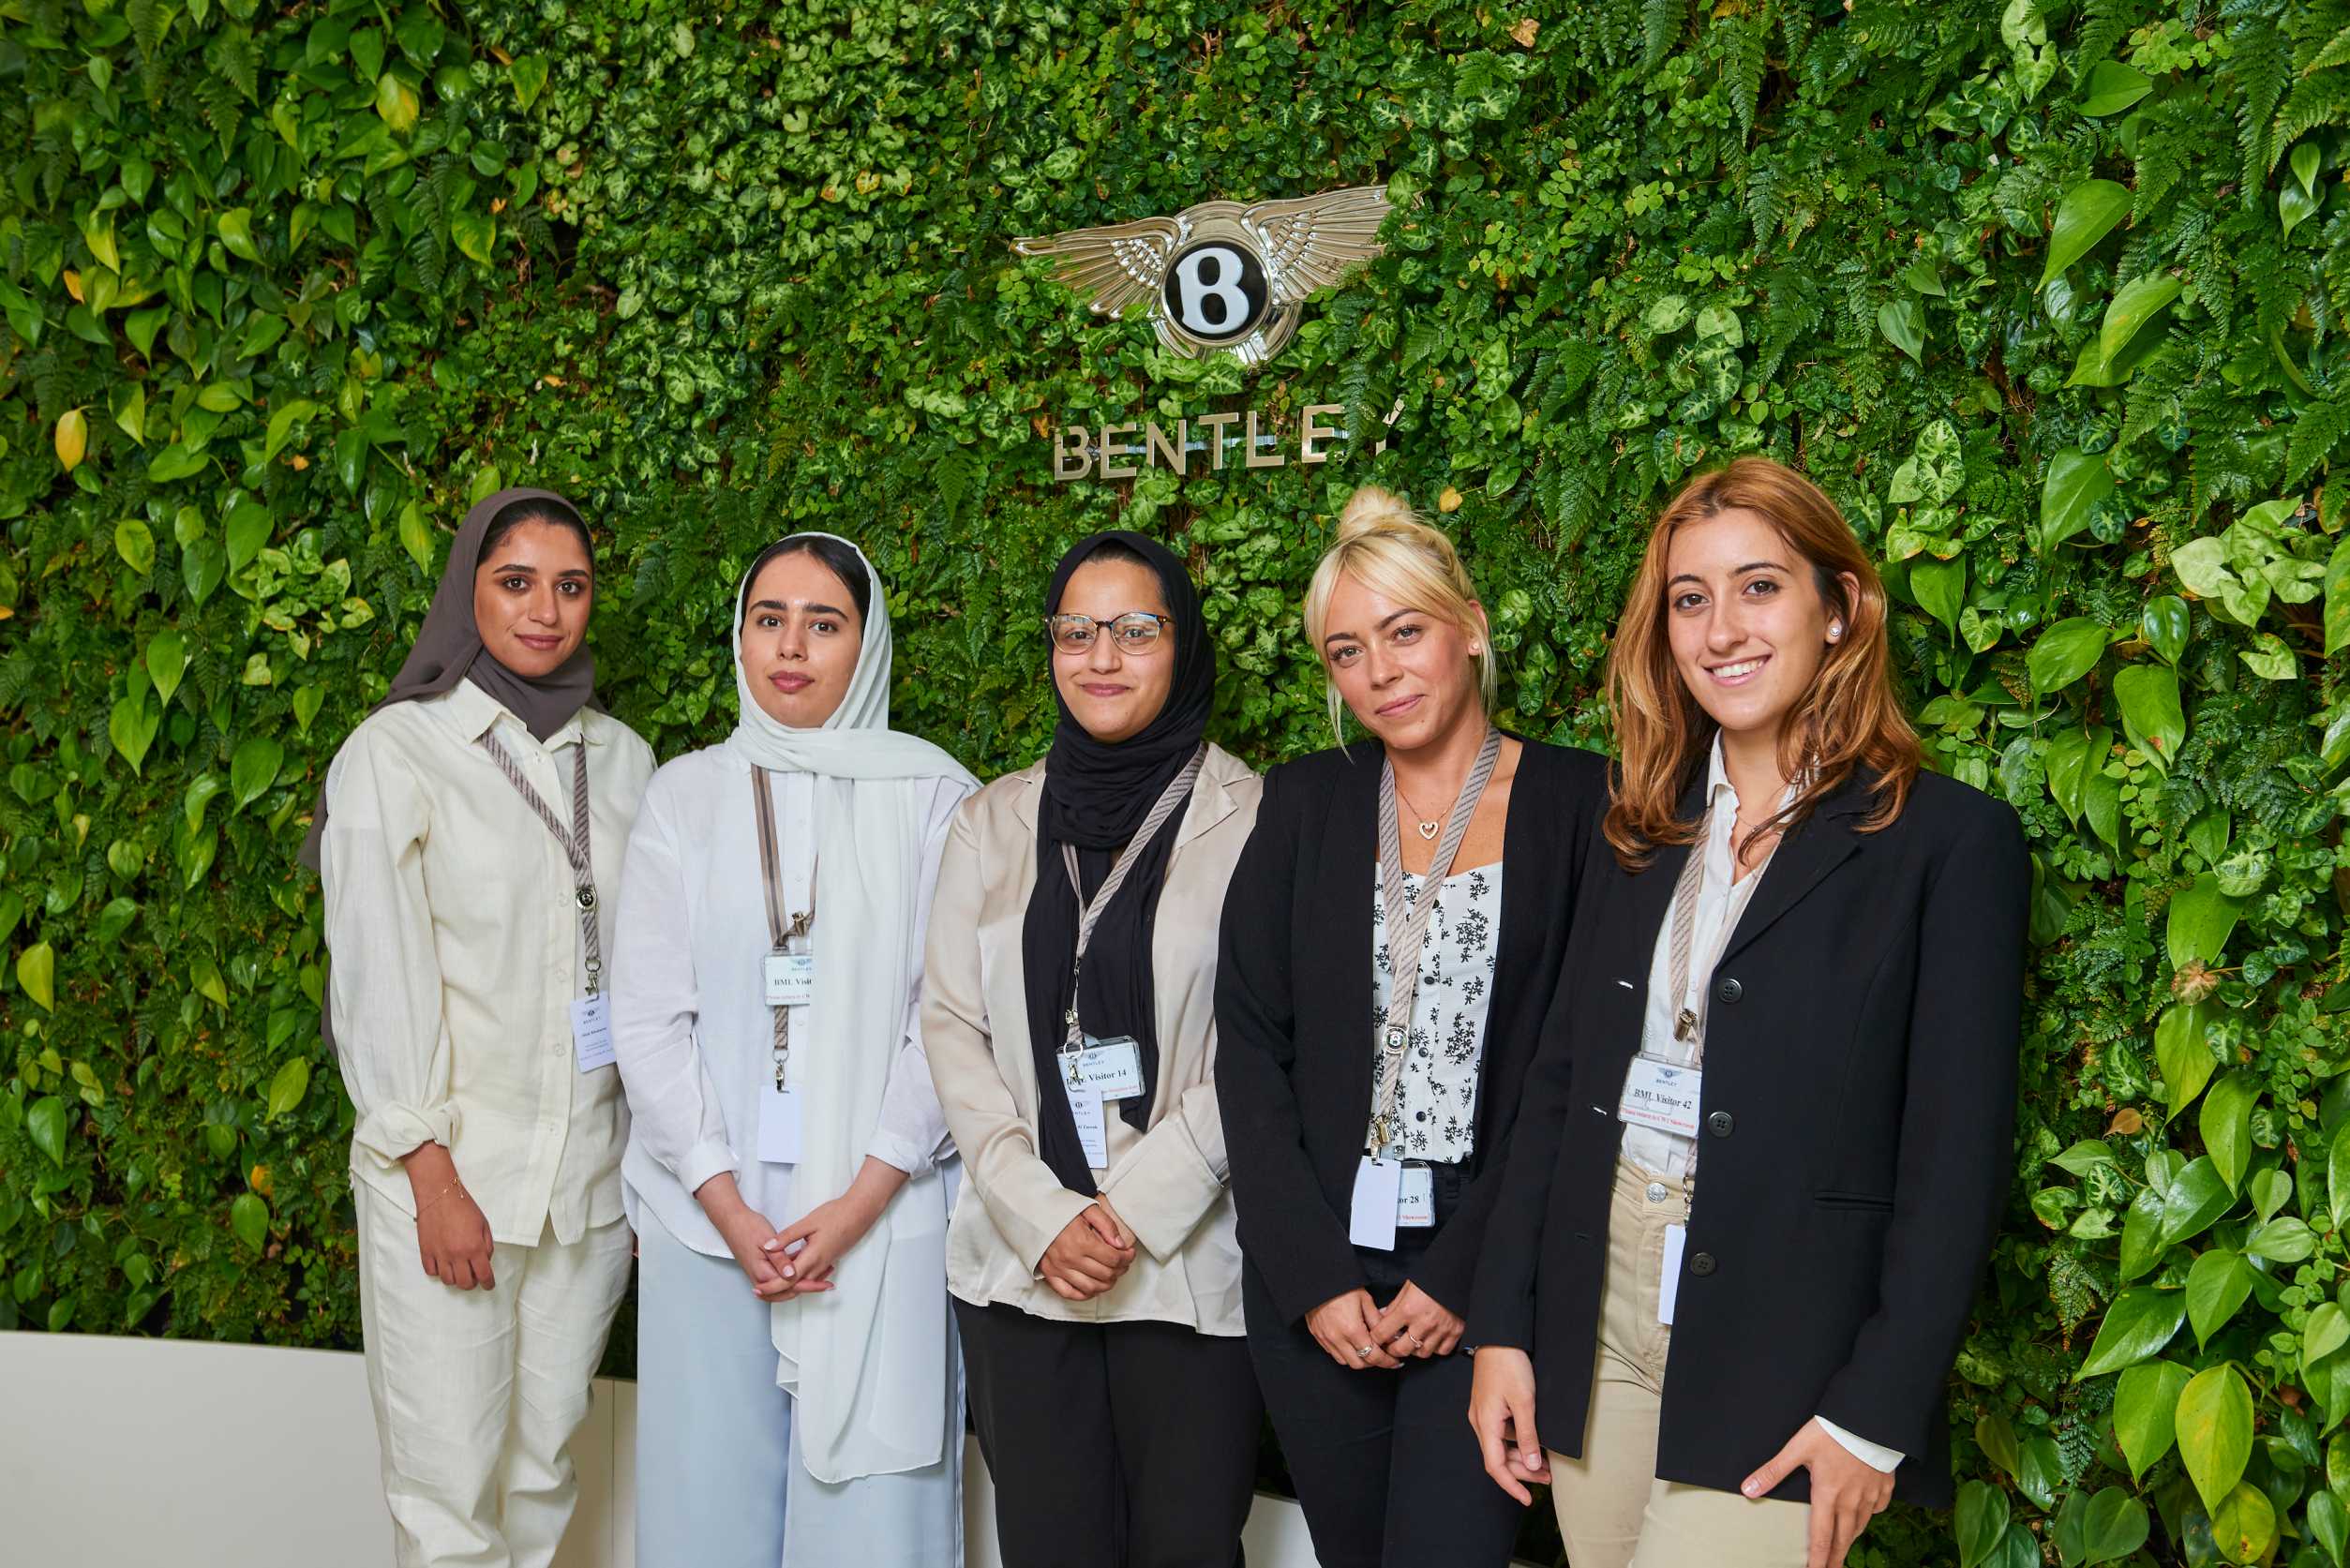 How is Bentley’s “Extraordinary Women” Program Empowering Women